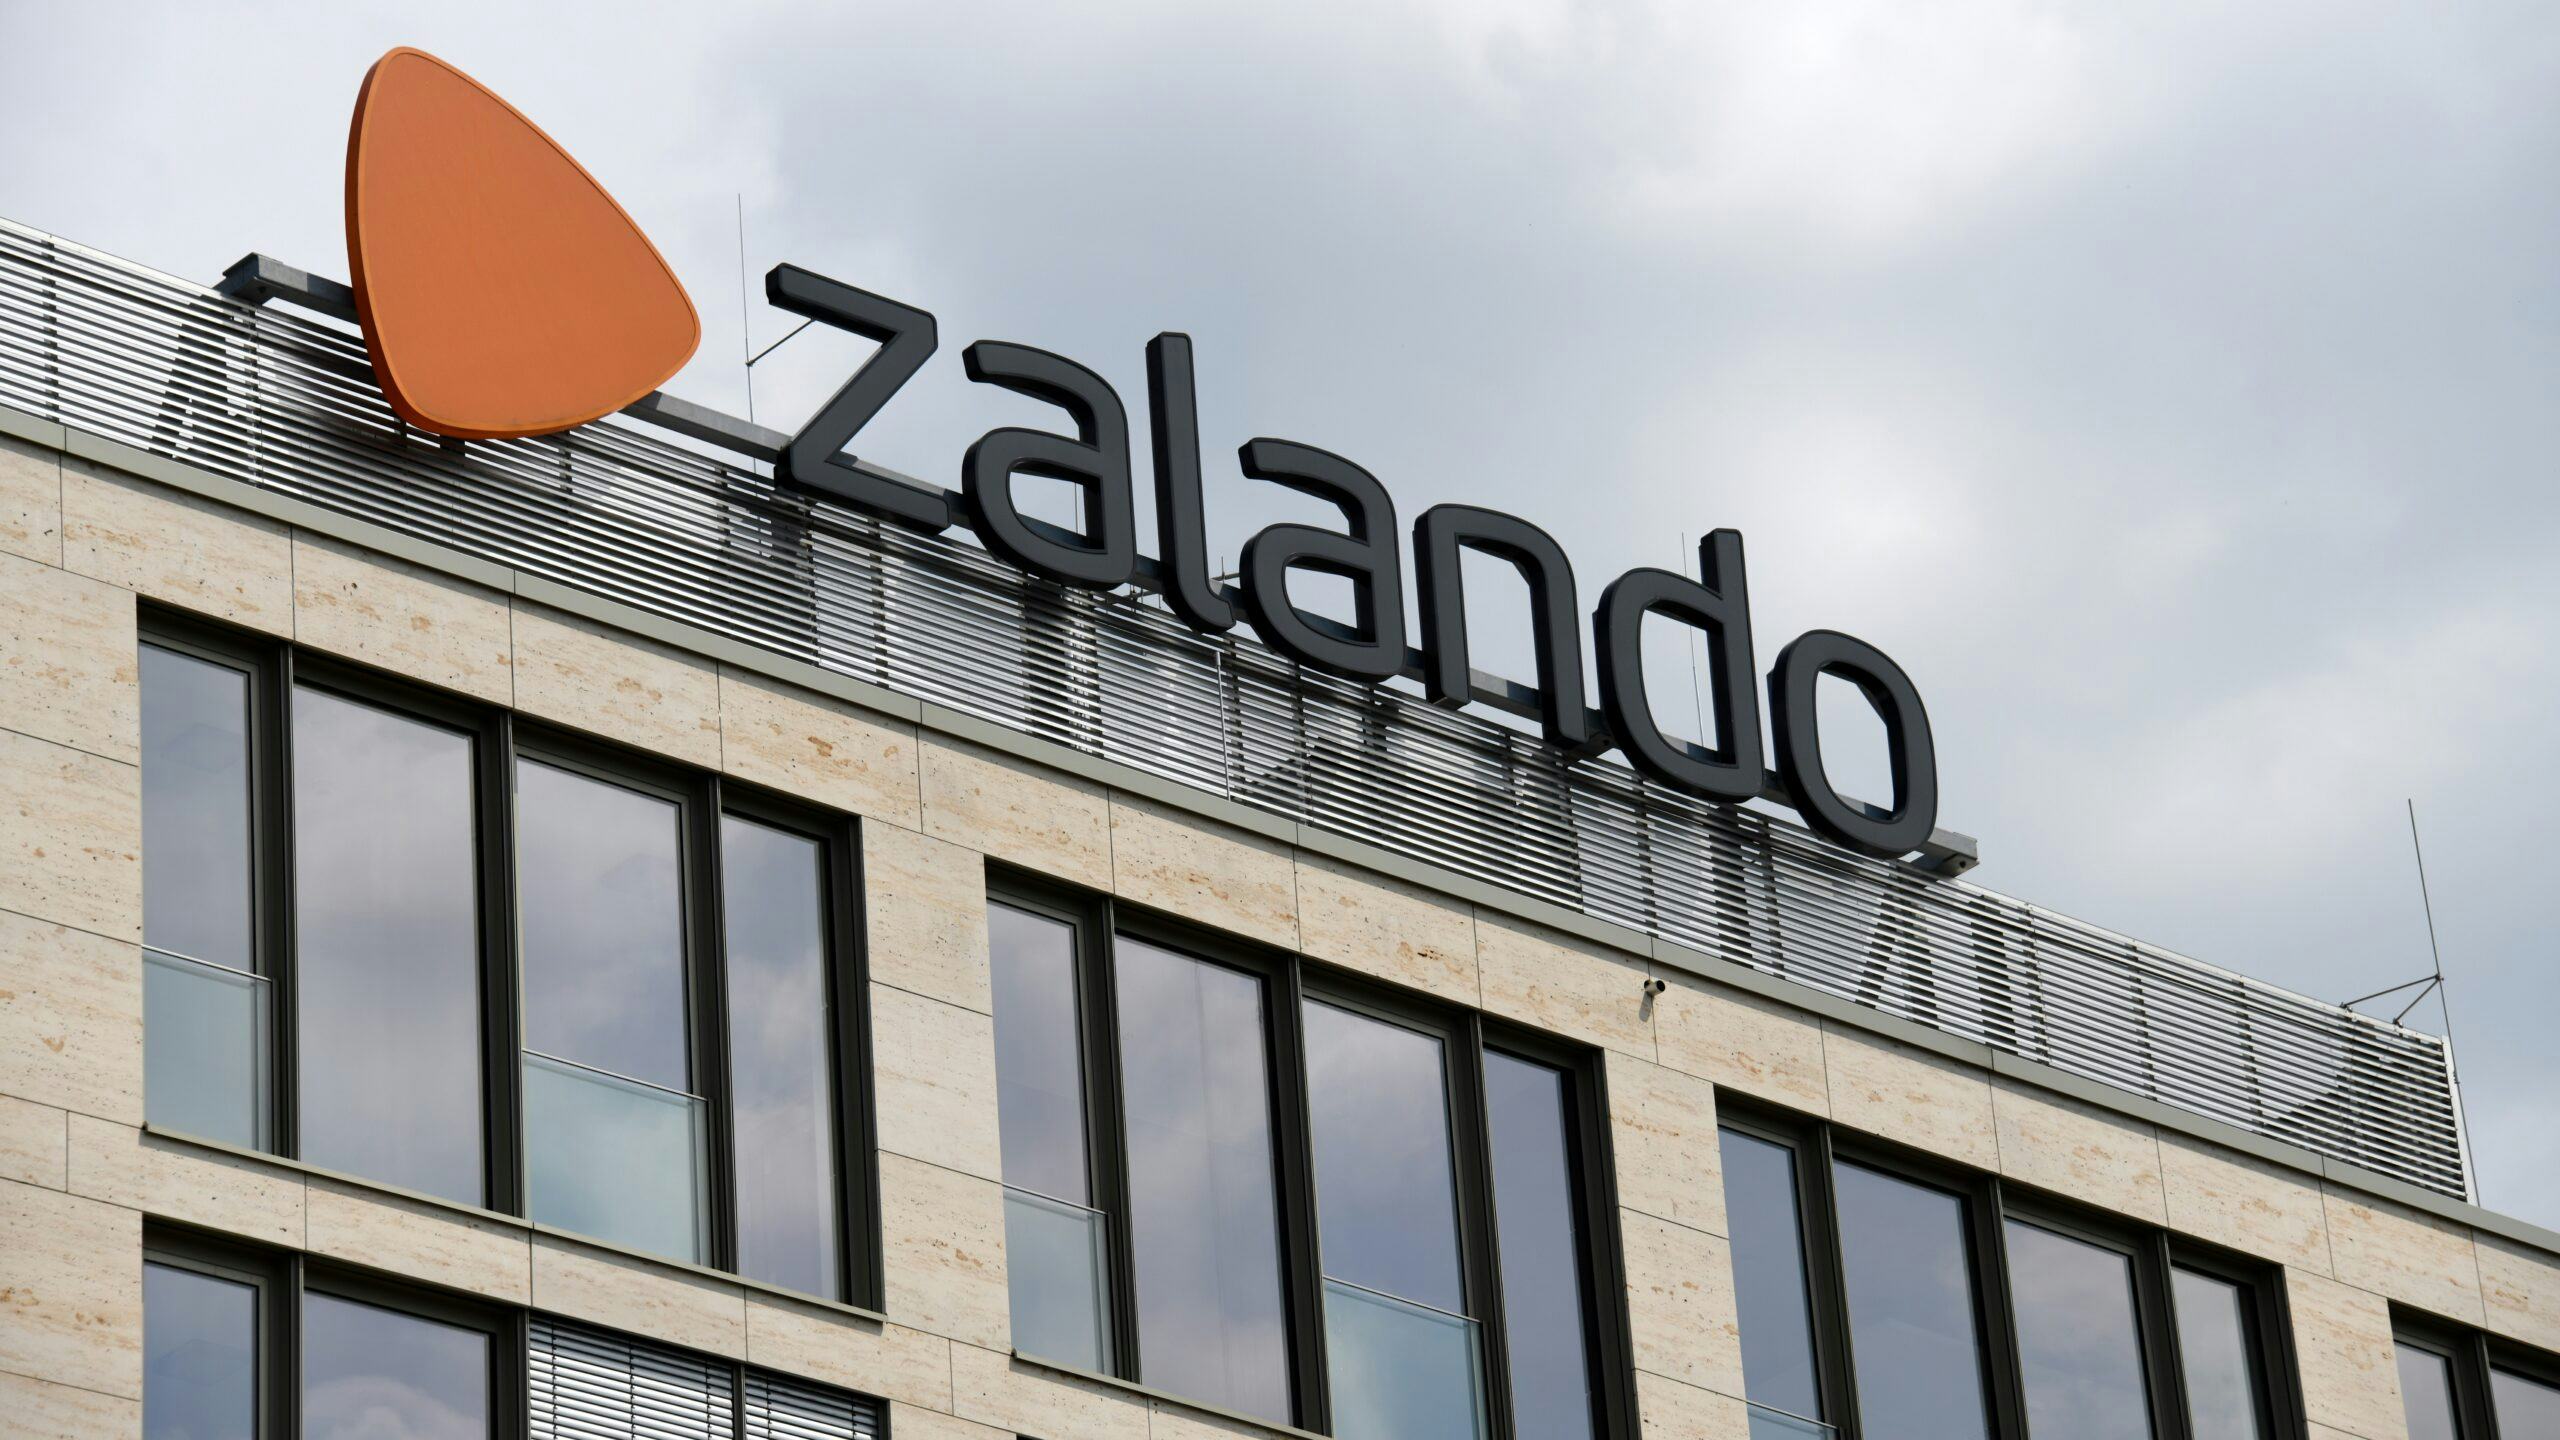 Webwinkel Zalando genoodzaakt banen te schrappen